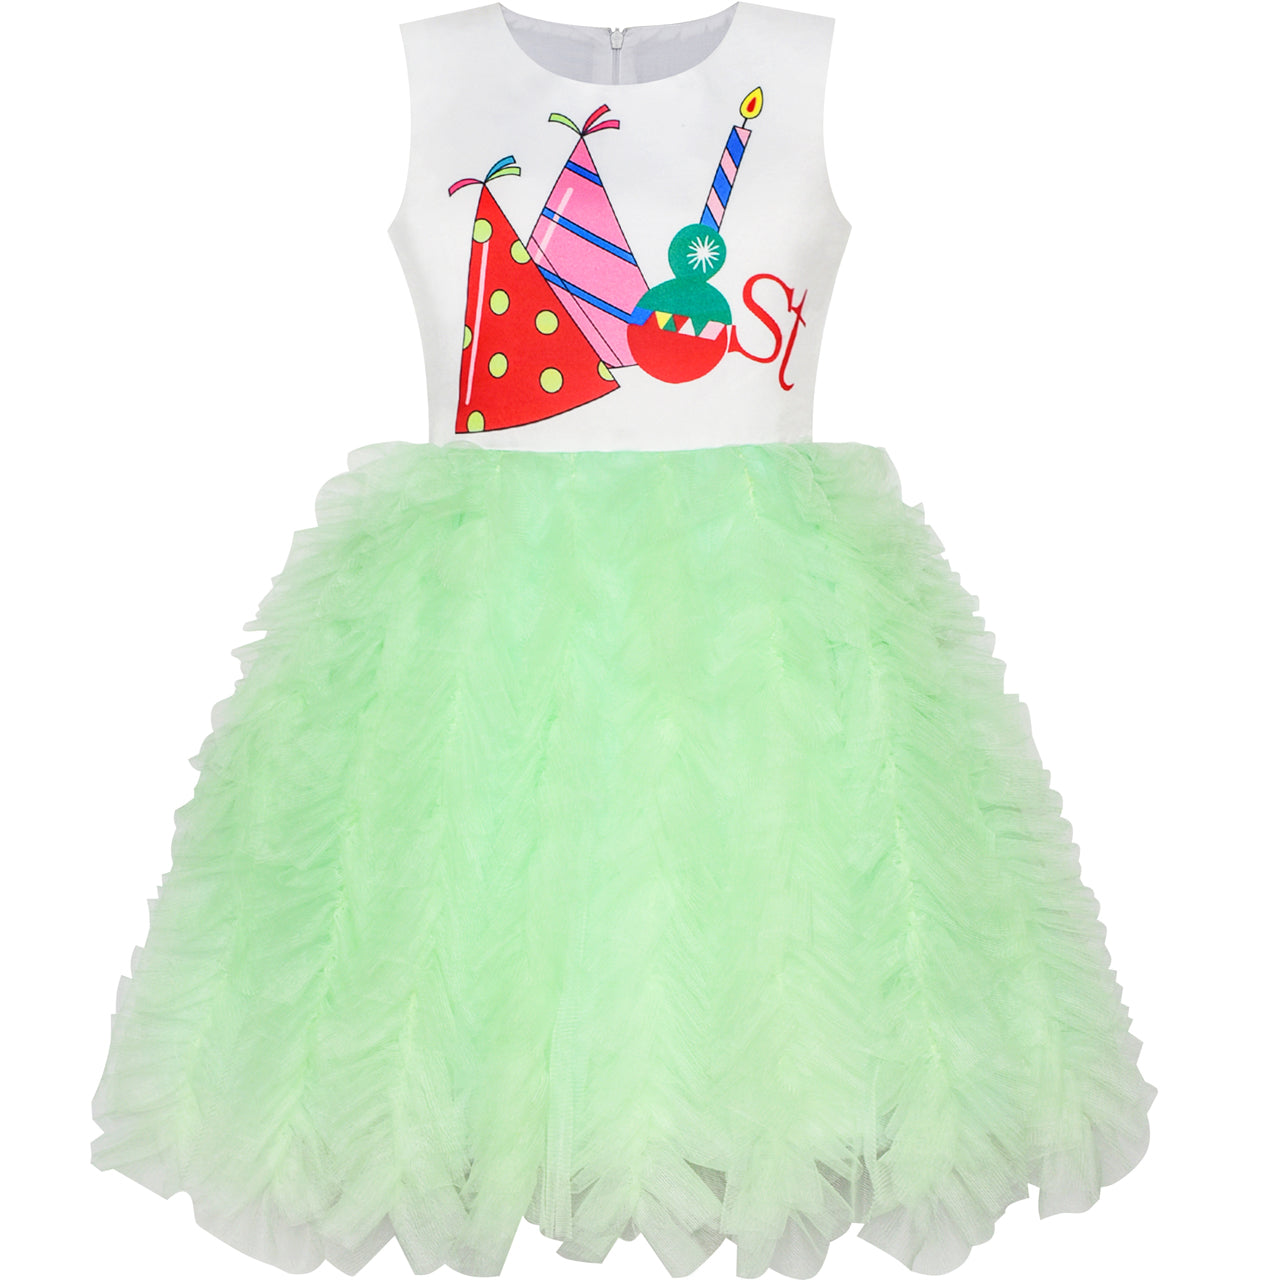 Personalised Name Wreath Girls' Dress – CheekyBabyTees Ltd